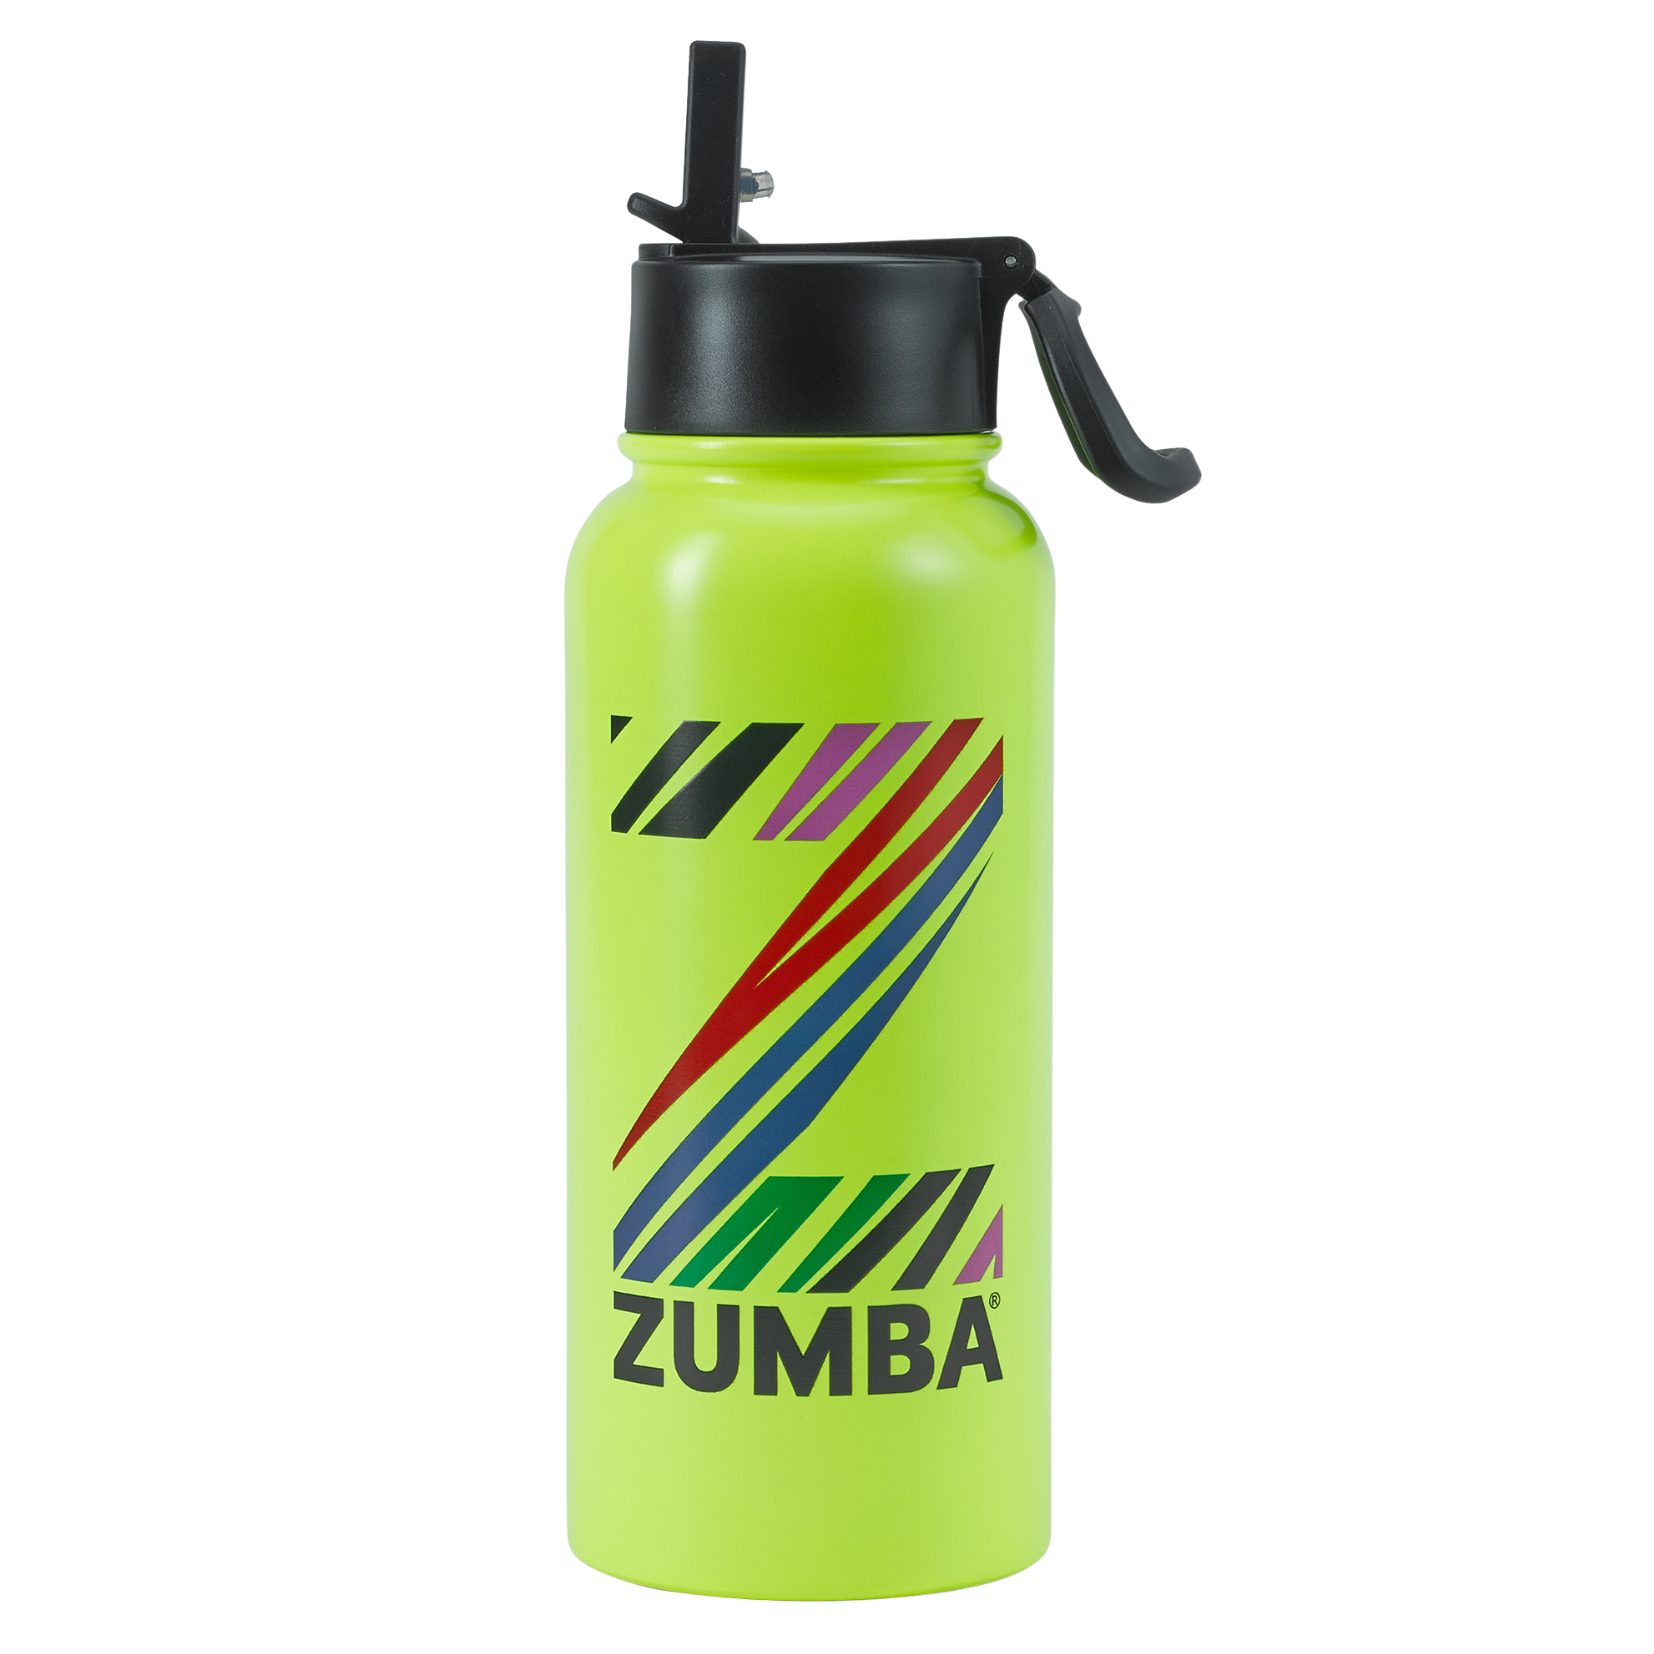 Destination Zumba Water Bottle